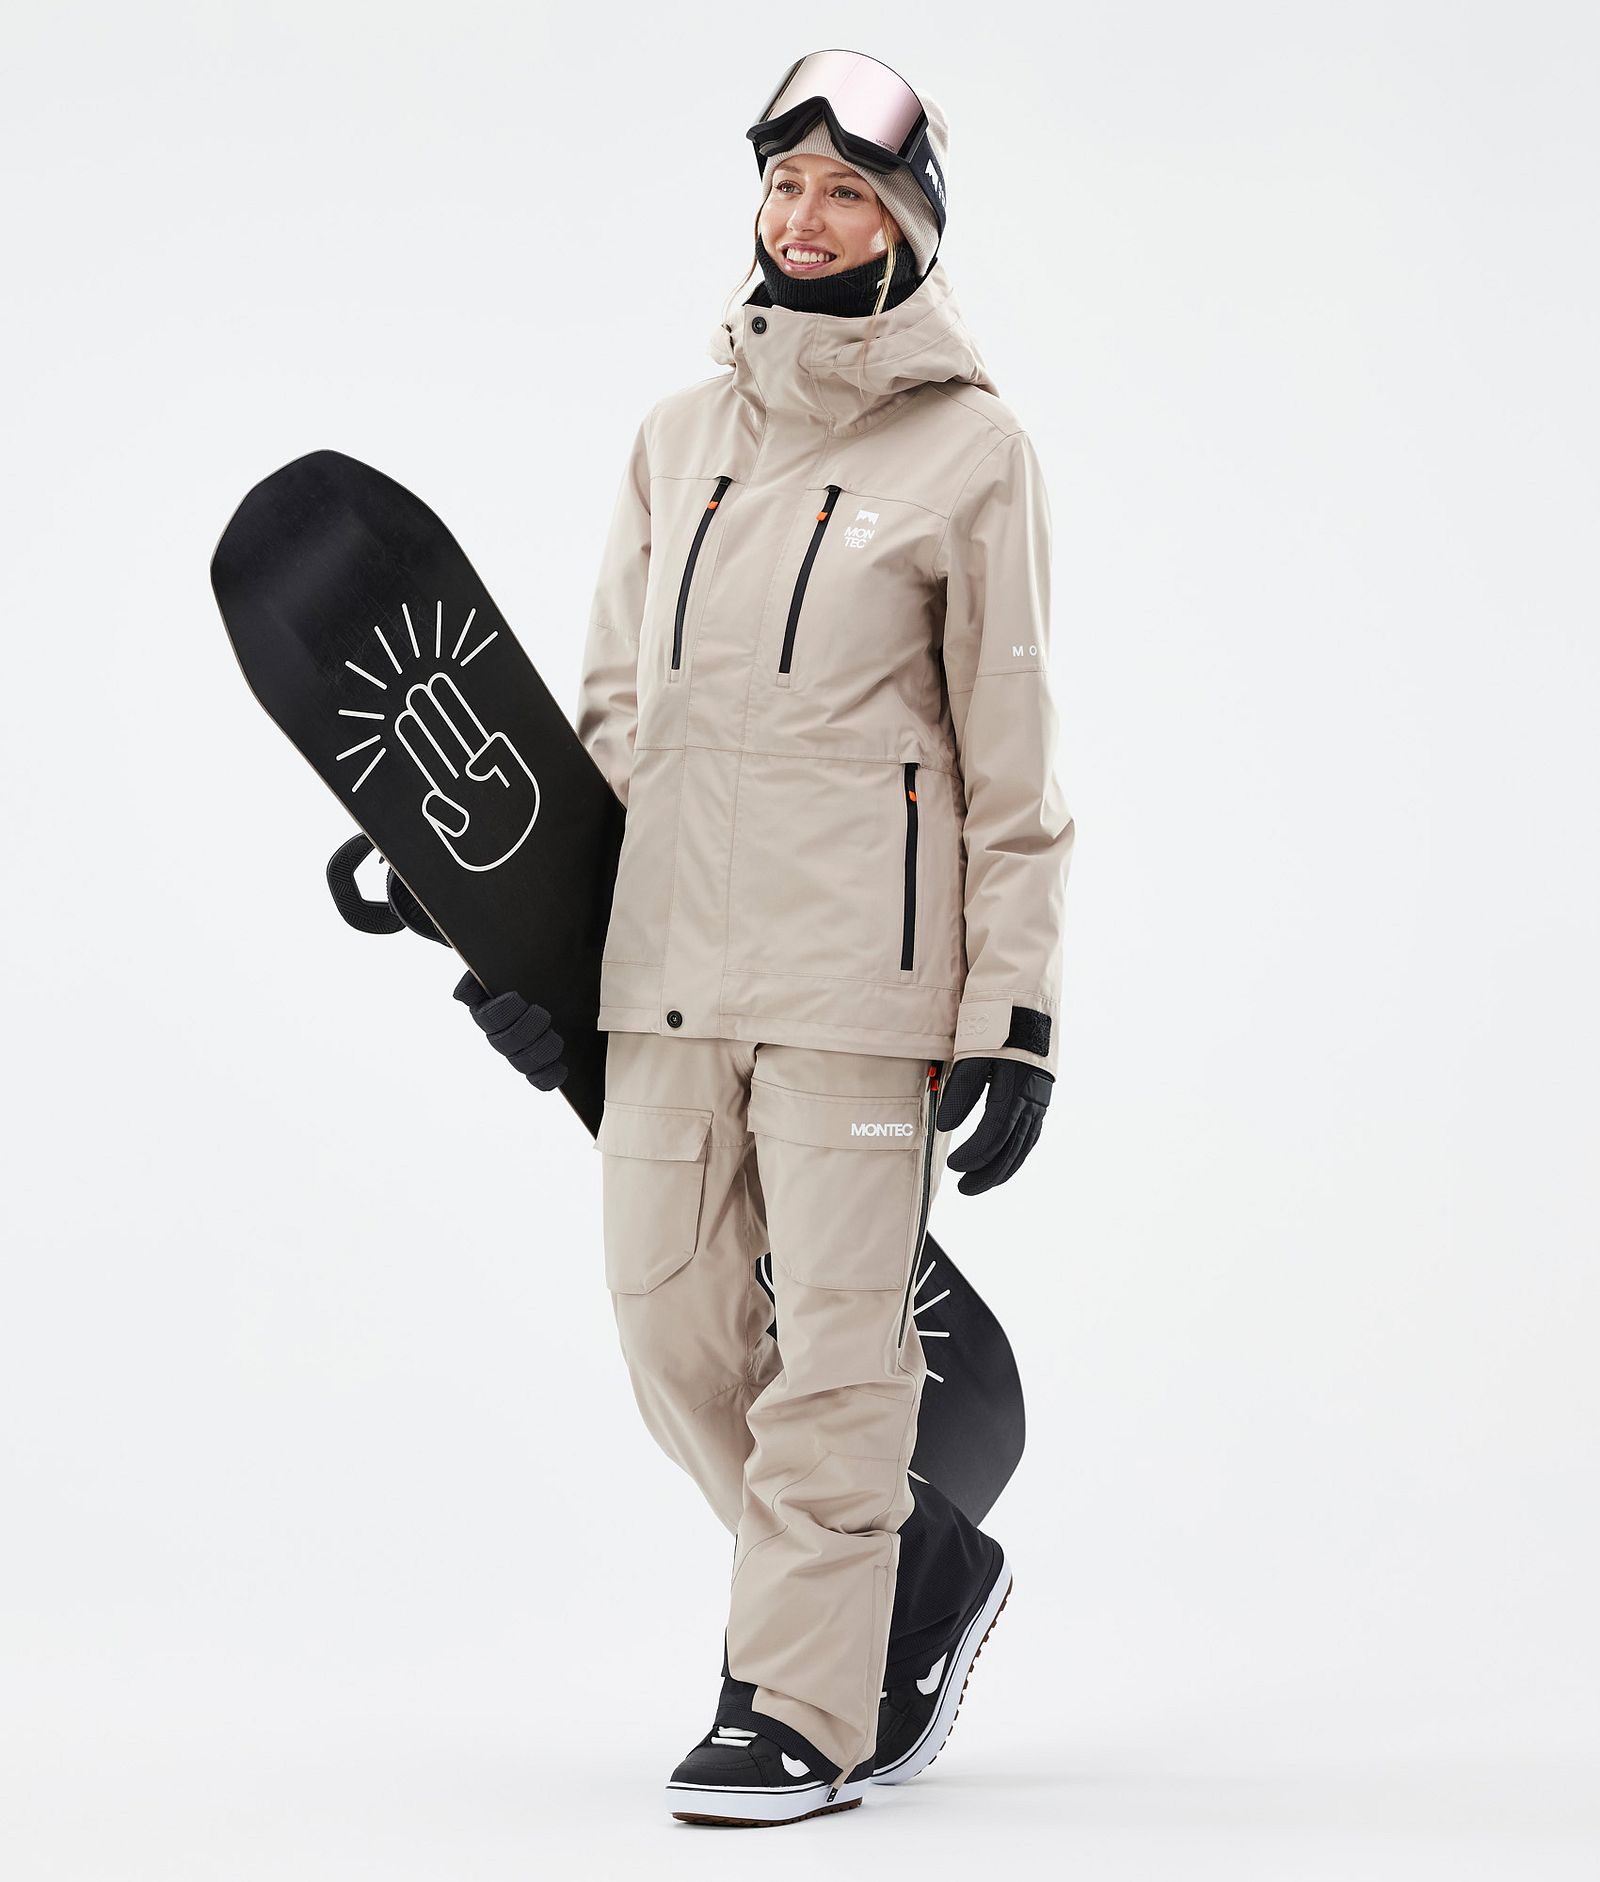 Fawk W Snowboard Pants Women Sand, Image 2 of 7